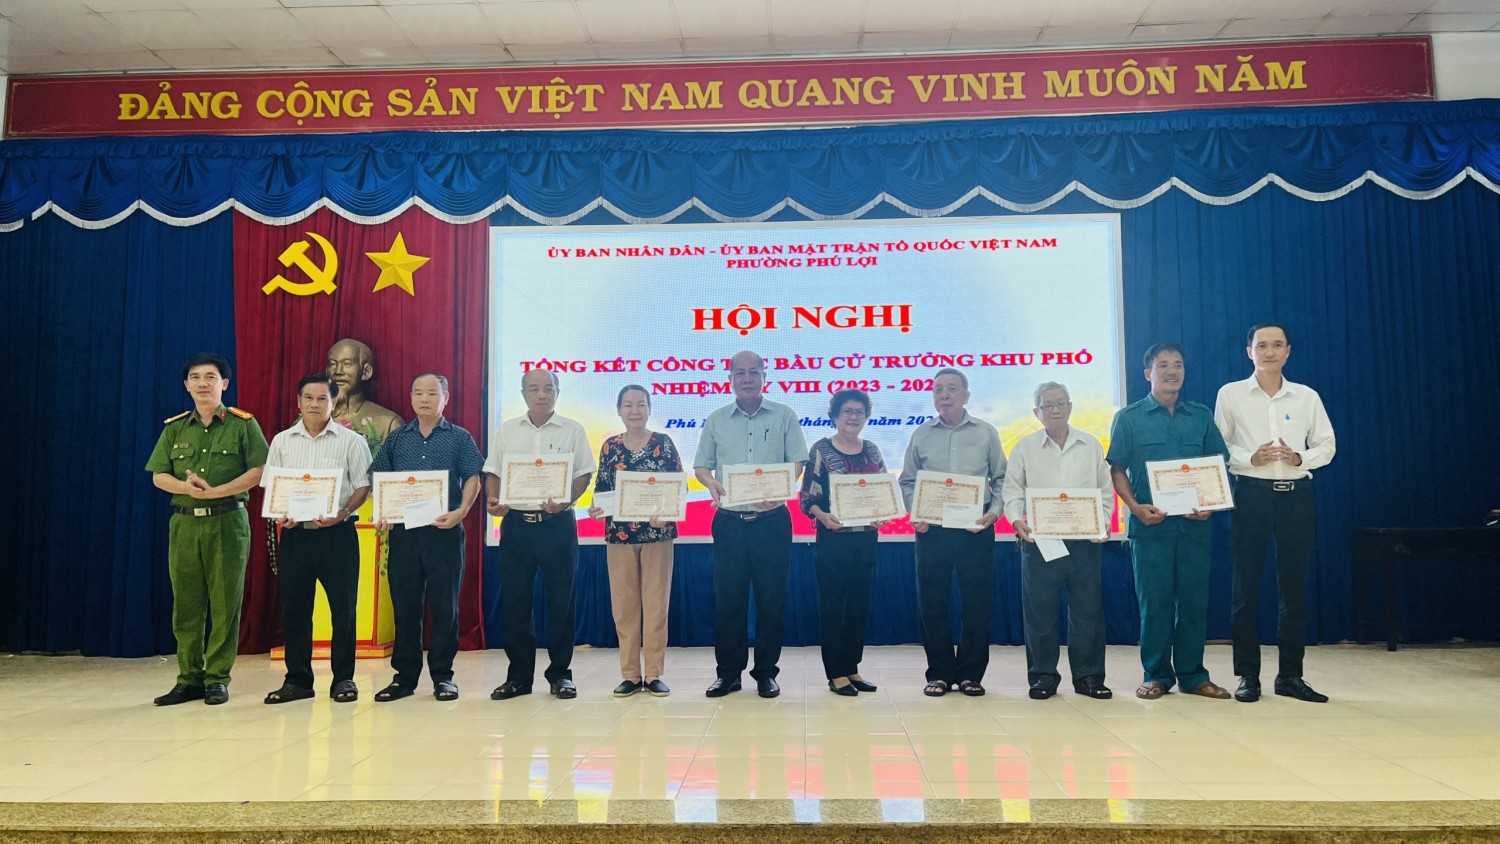 UBND phối hợp Ủy ban Mặt trận Tổ quốc phường Phú Lợi tổ chức Hội nghị tổng kết công tác bầu cử Trưởng khu phố, nhiệm kỳ VIII (2023-2026)